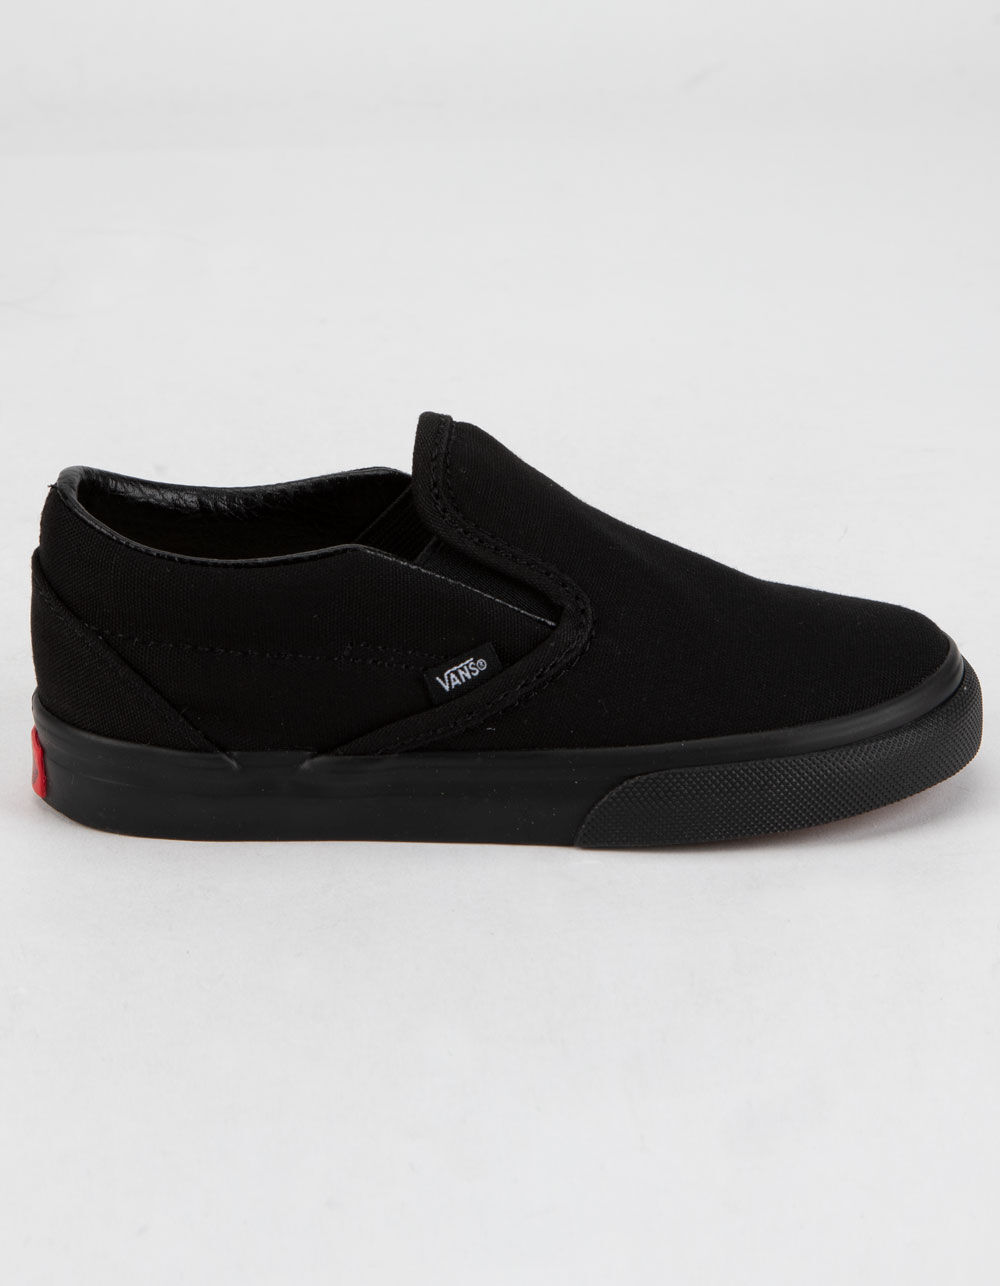 VANS Toddler Classic Slip-On Black Shoes image number 0